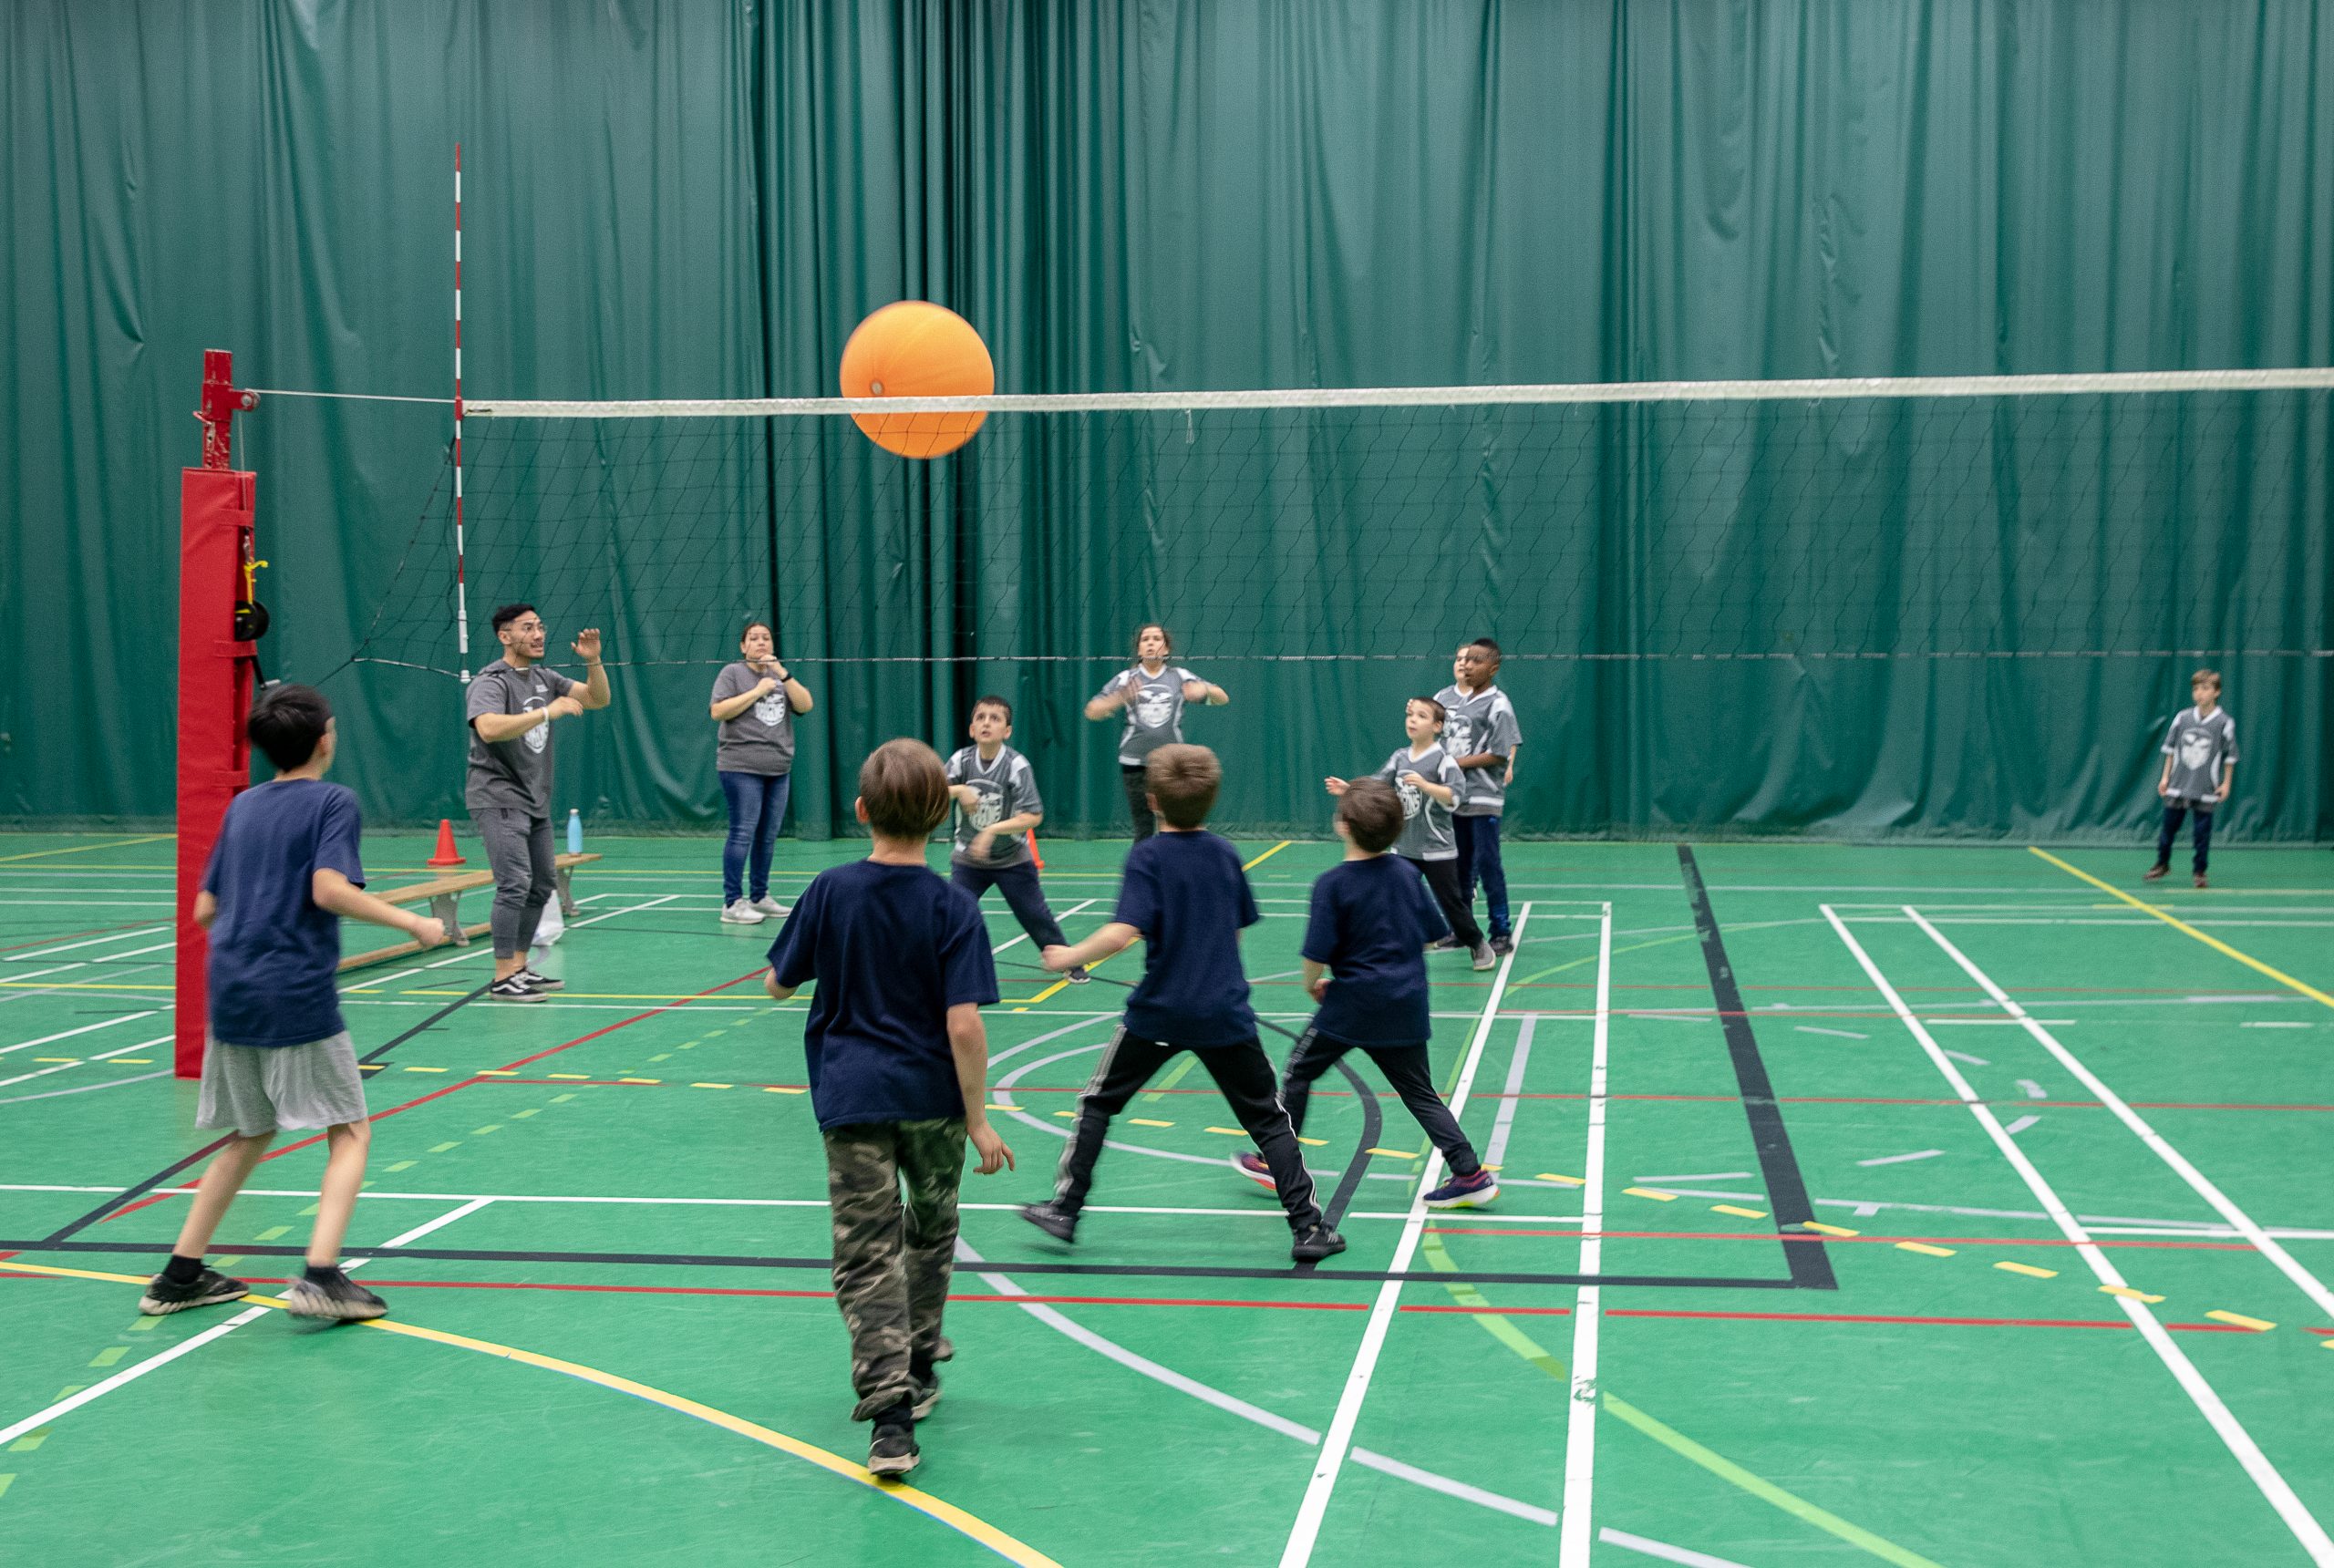 Description de l'image : De jeunes enfants jouent au volleyball dans un gymnase. Le ballon orange traverse le filet.